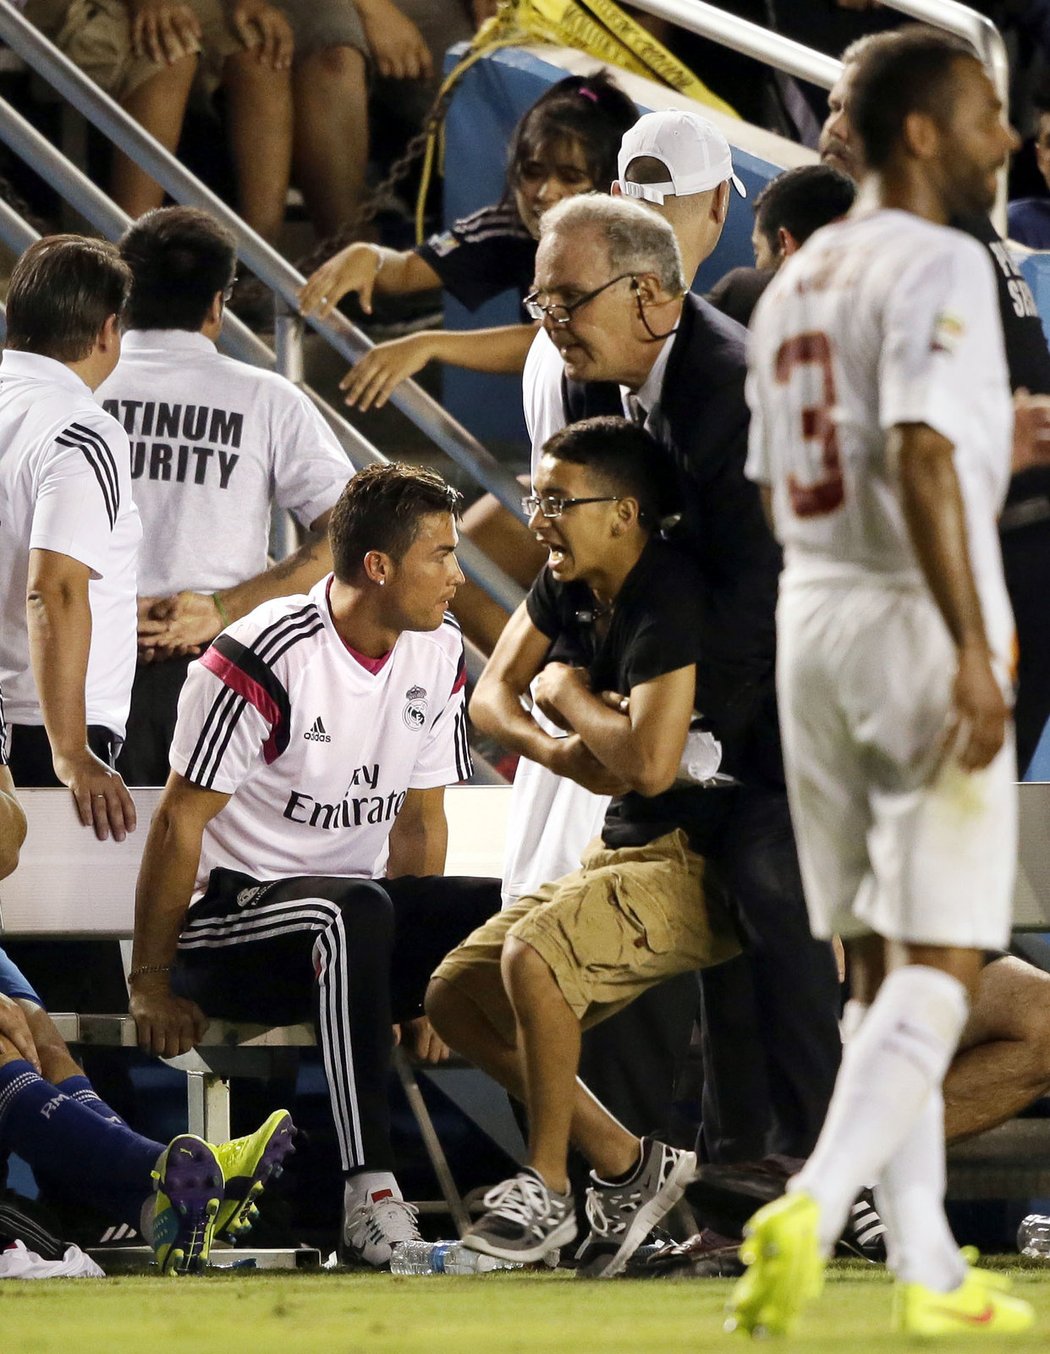 Mladý fanoušek se dostal blízko ke Cristianovi Ronaldovi, Portugalec ho ovšem ignoroval